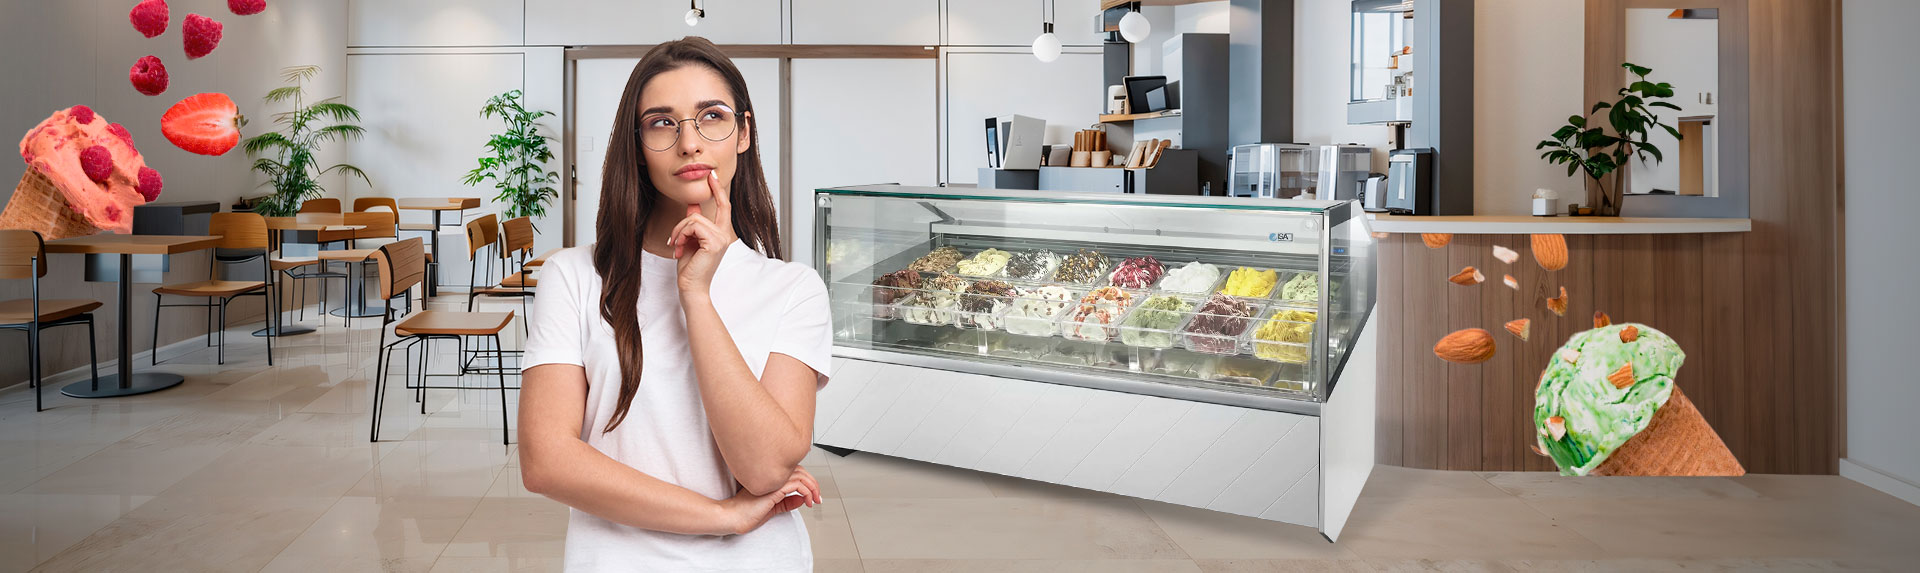 Portada cómo elegir la vitrina de helados ideal para tu negocio